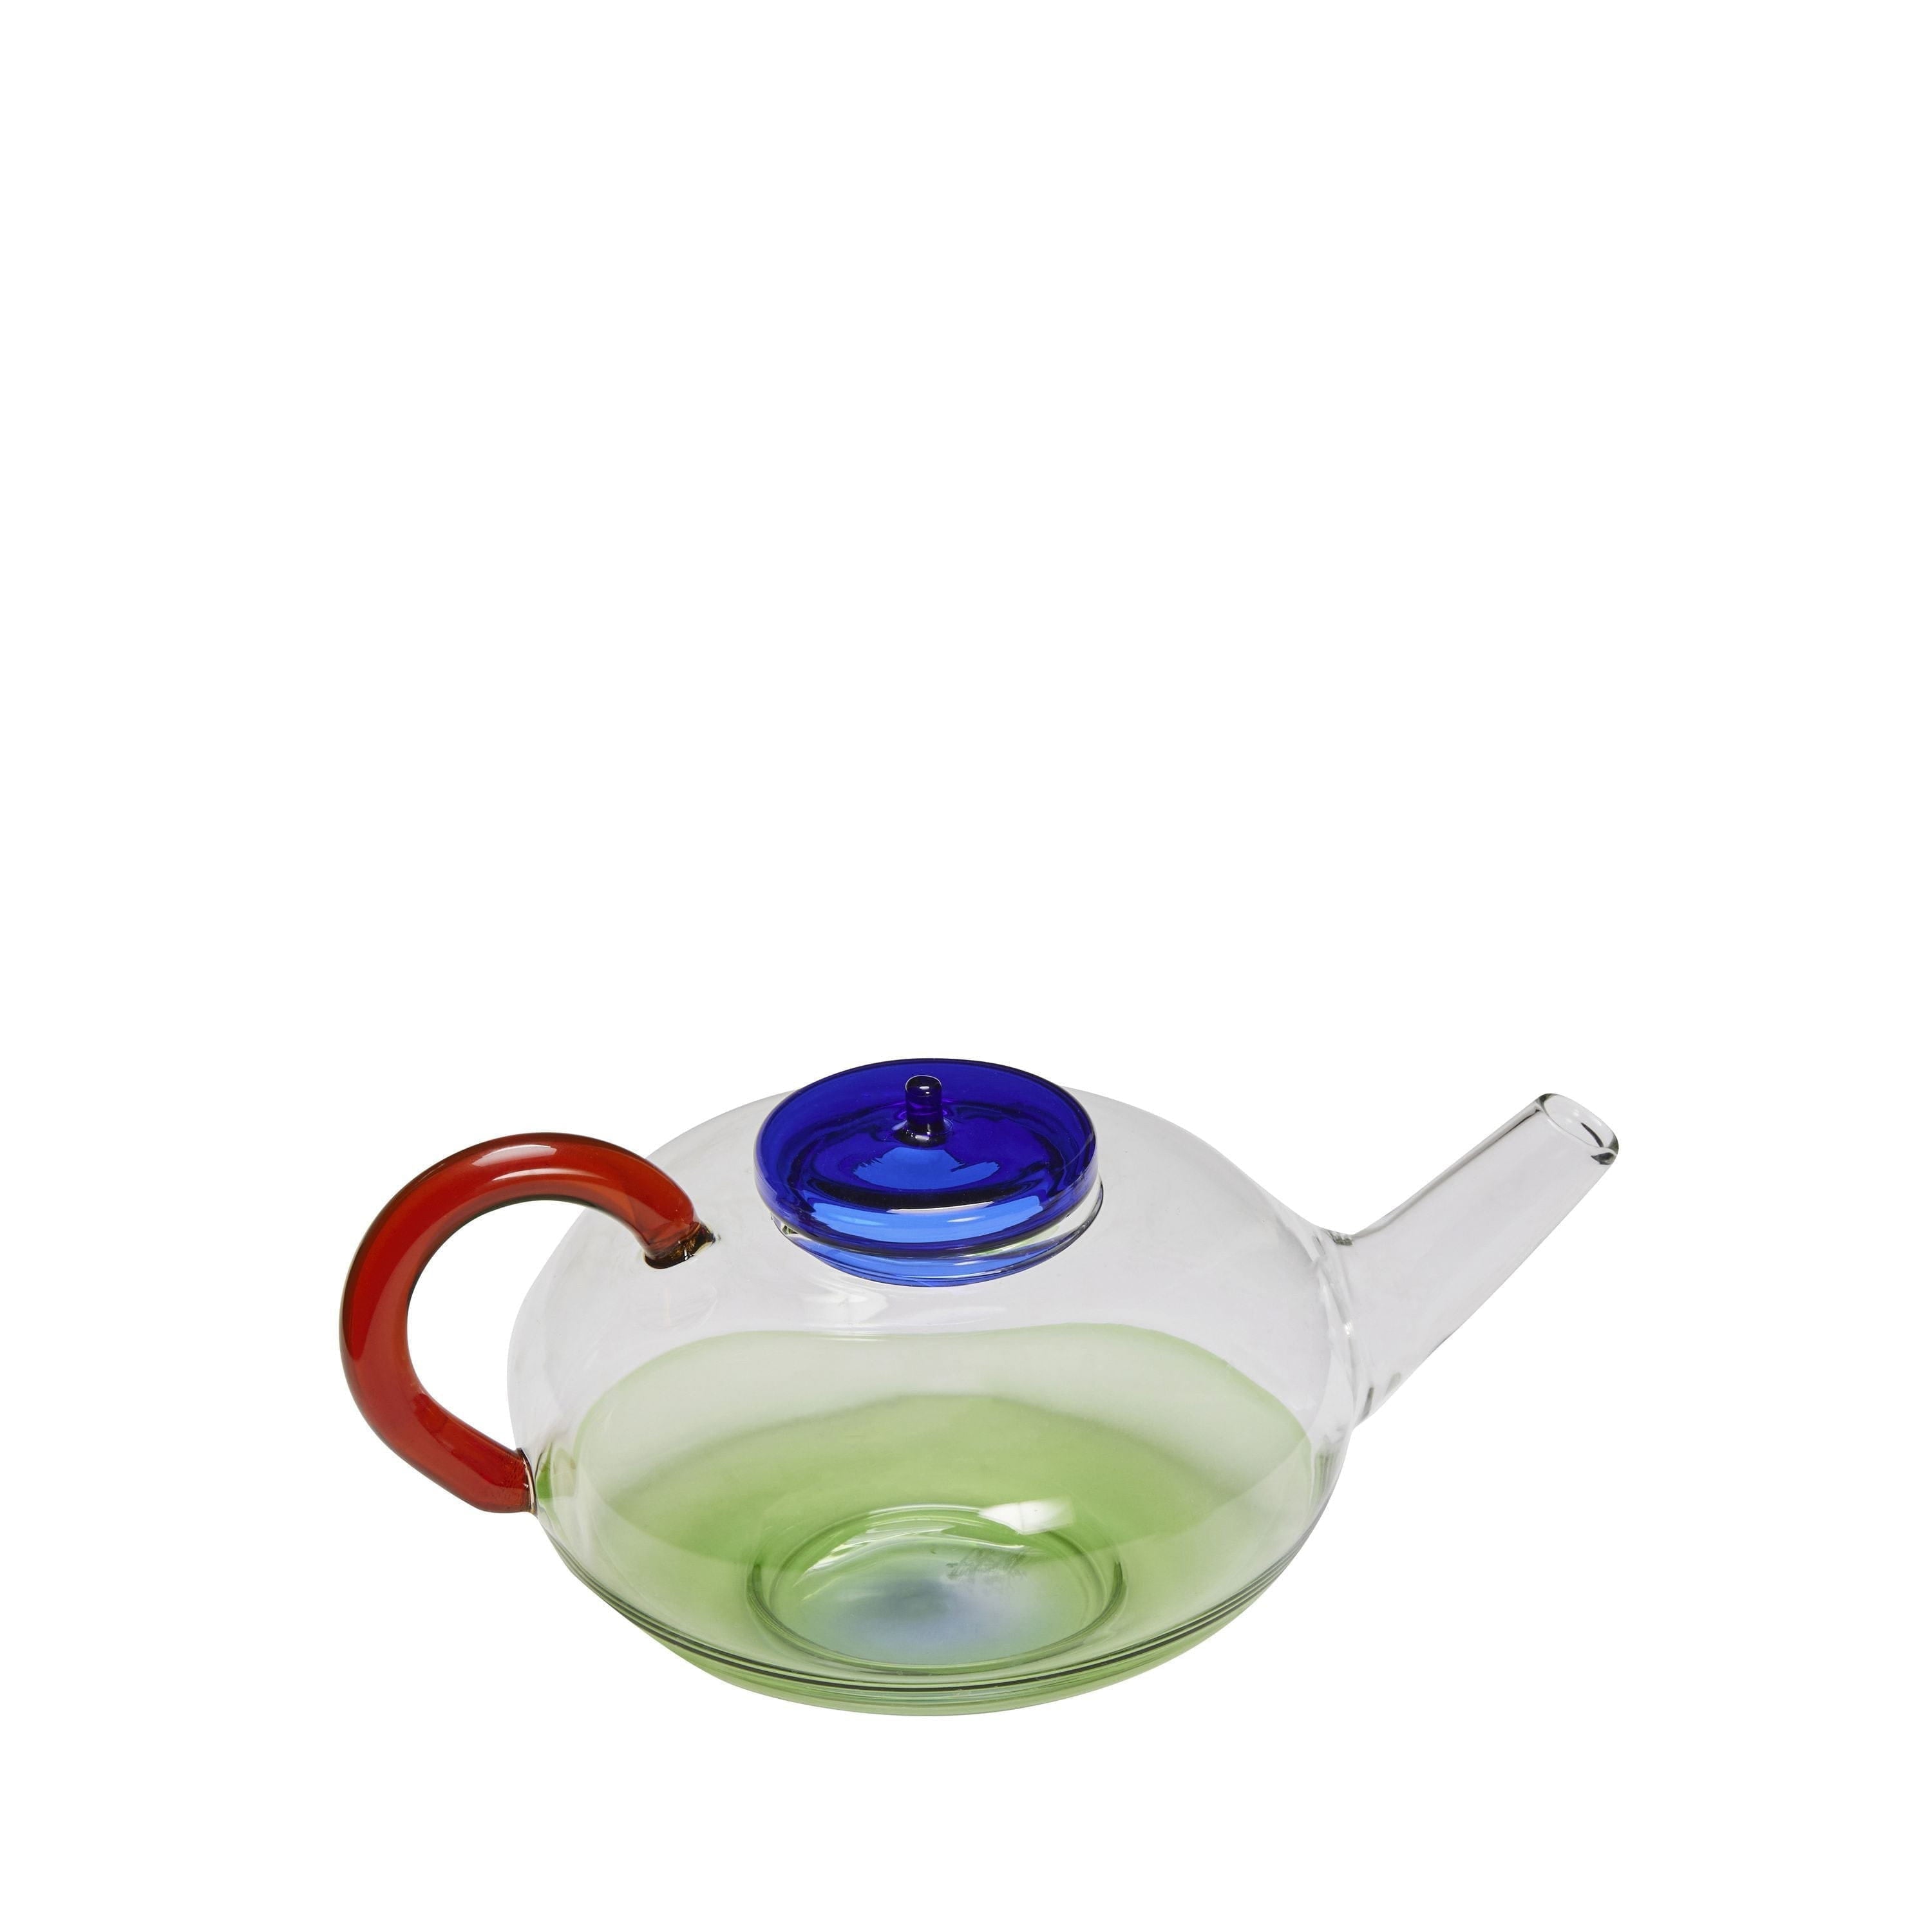 Hübsch No Rush Teapot, Blue/Clear/Green/Amber